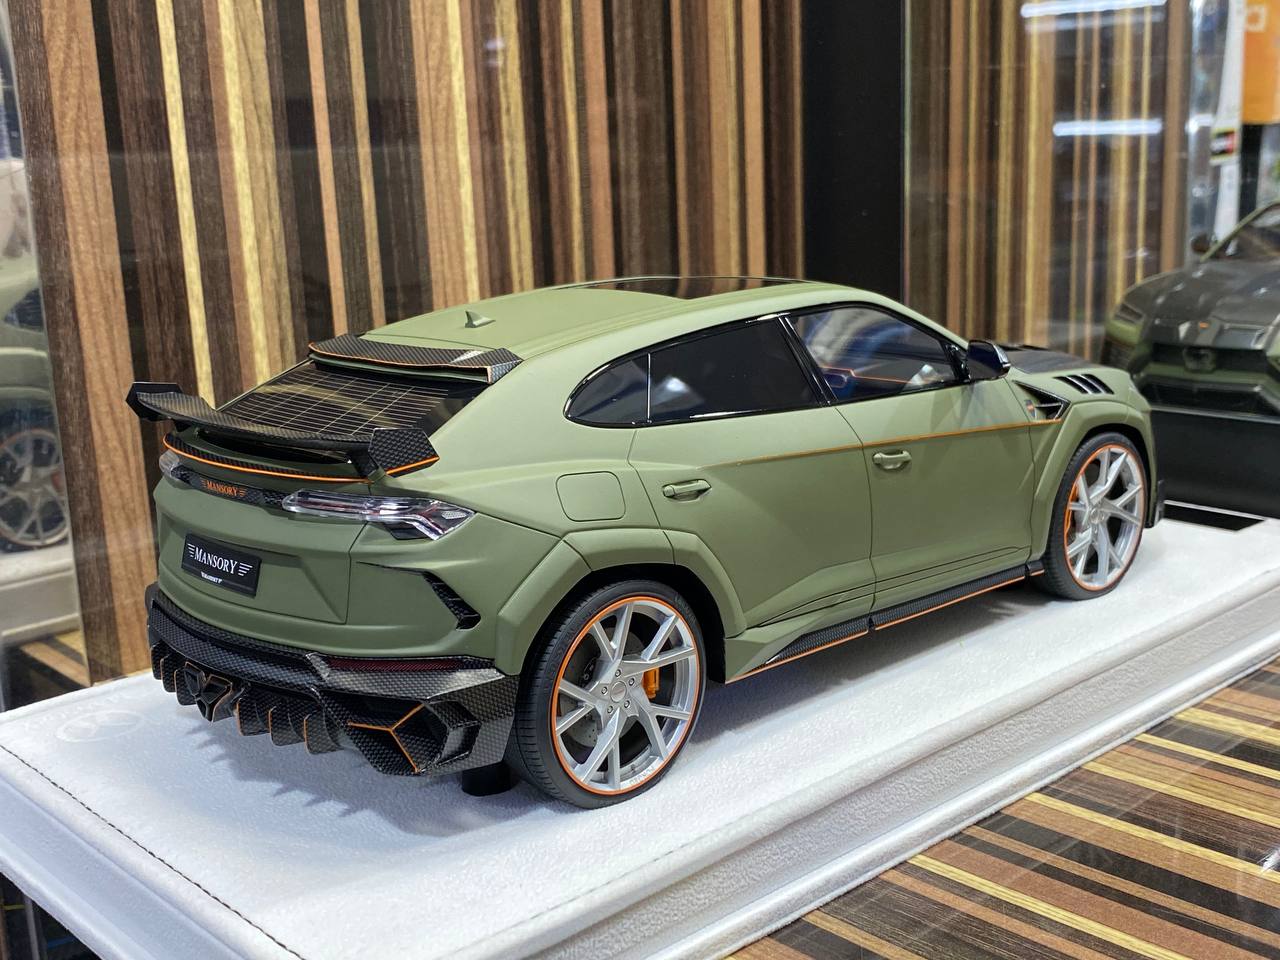 1/18 Timothy & Pierre Lamborghini URUS Venatus Green Matt Resin Model Car|Sold in Dturman.com Dubai UAE.